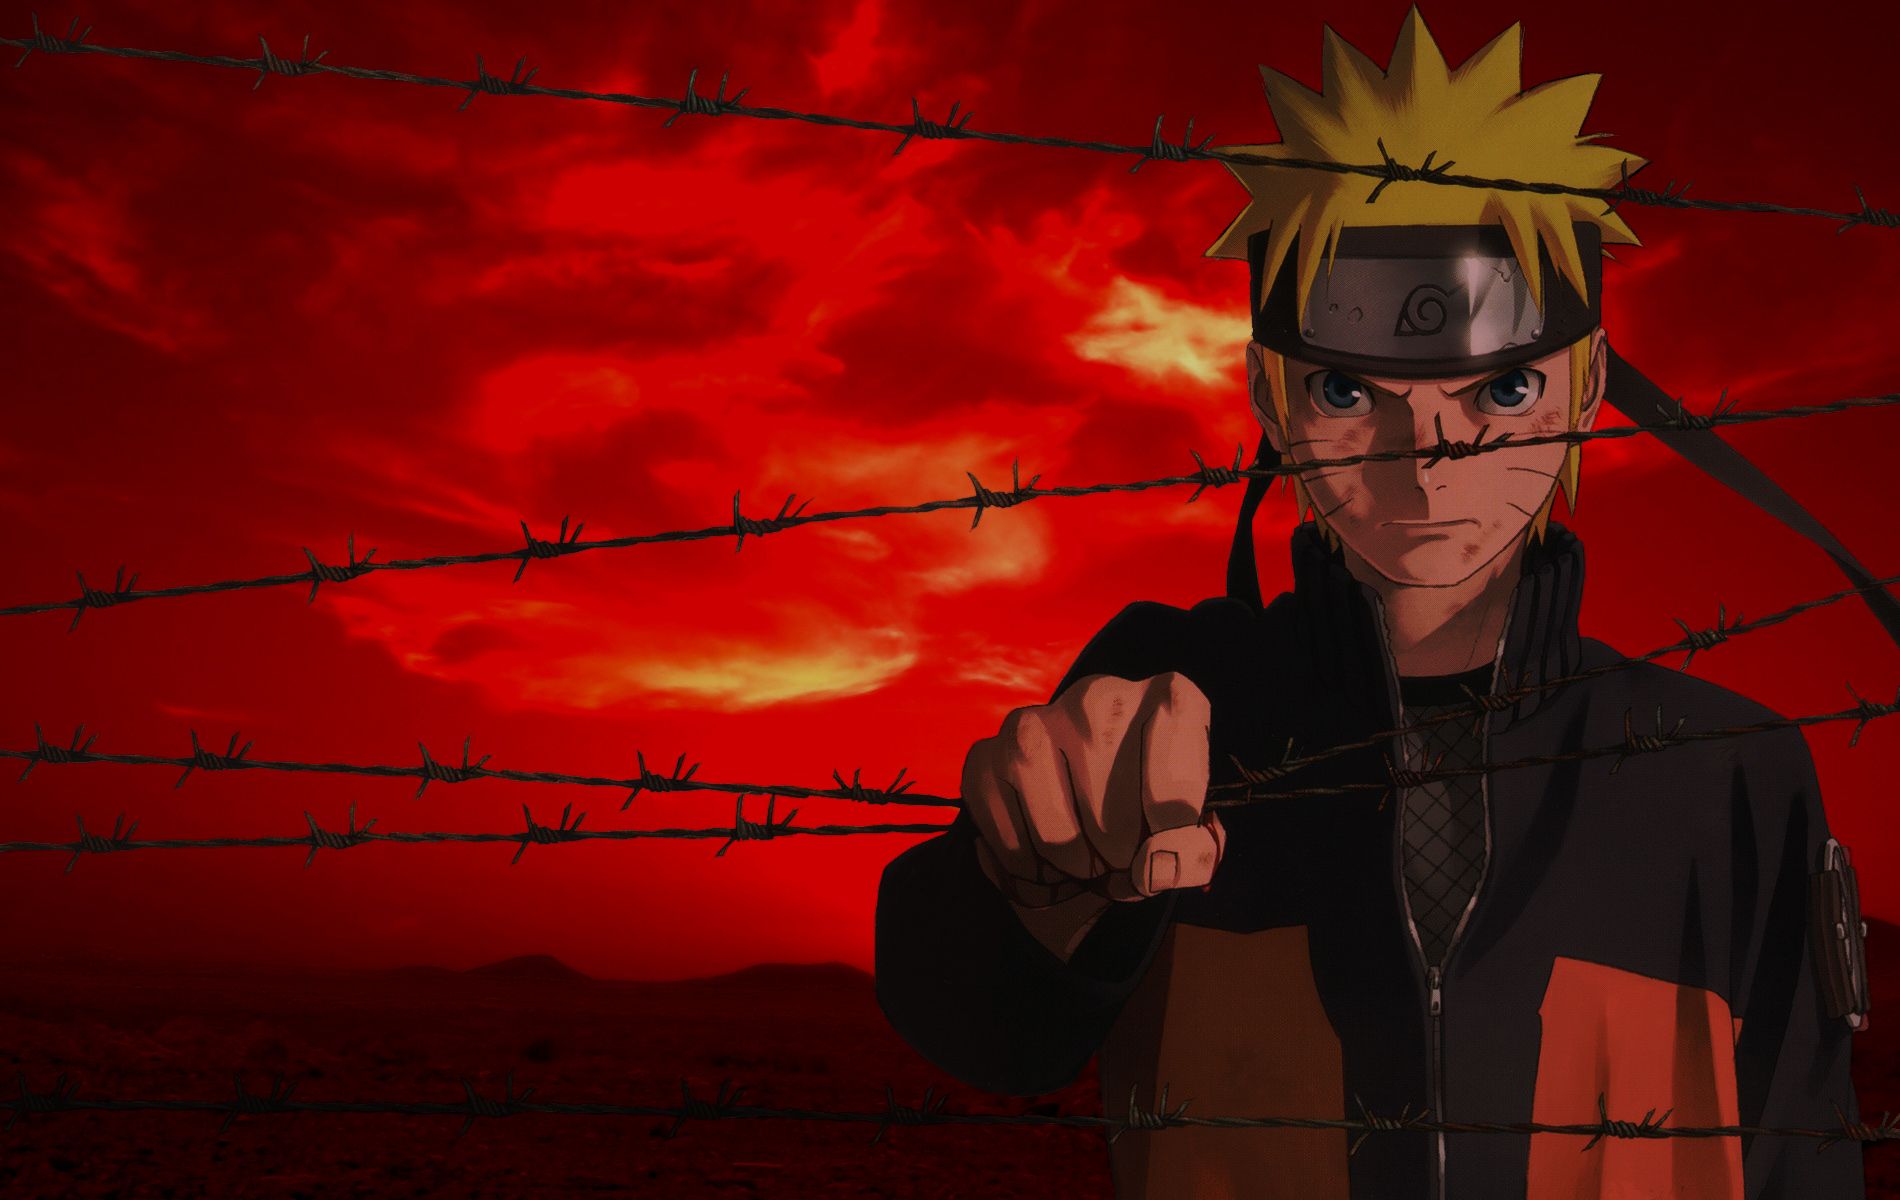 Người hâm mộ Naruto đừng bỏ qua hình nền màu đỏ đầy nghị lực và bản lĩnh này. Cùng hòa mình vào thế giới giả tưởng với những nhân vật yêu quý trong seri truyện tranh nổi tiếng này.